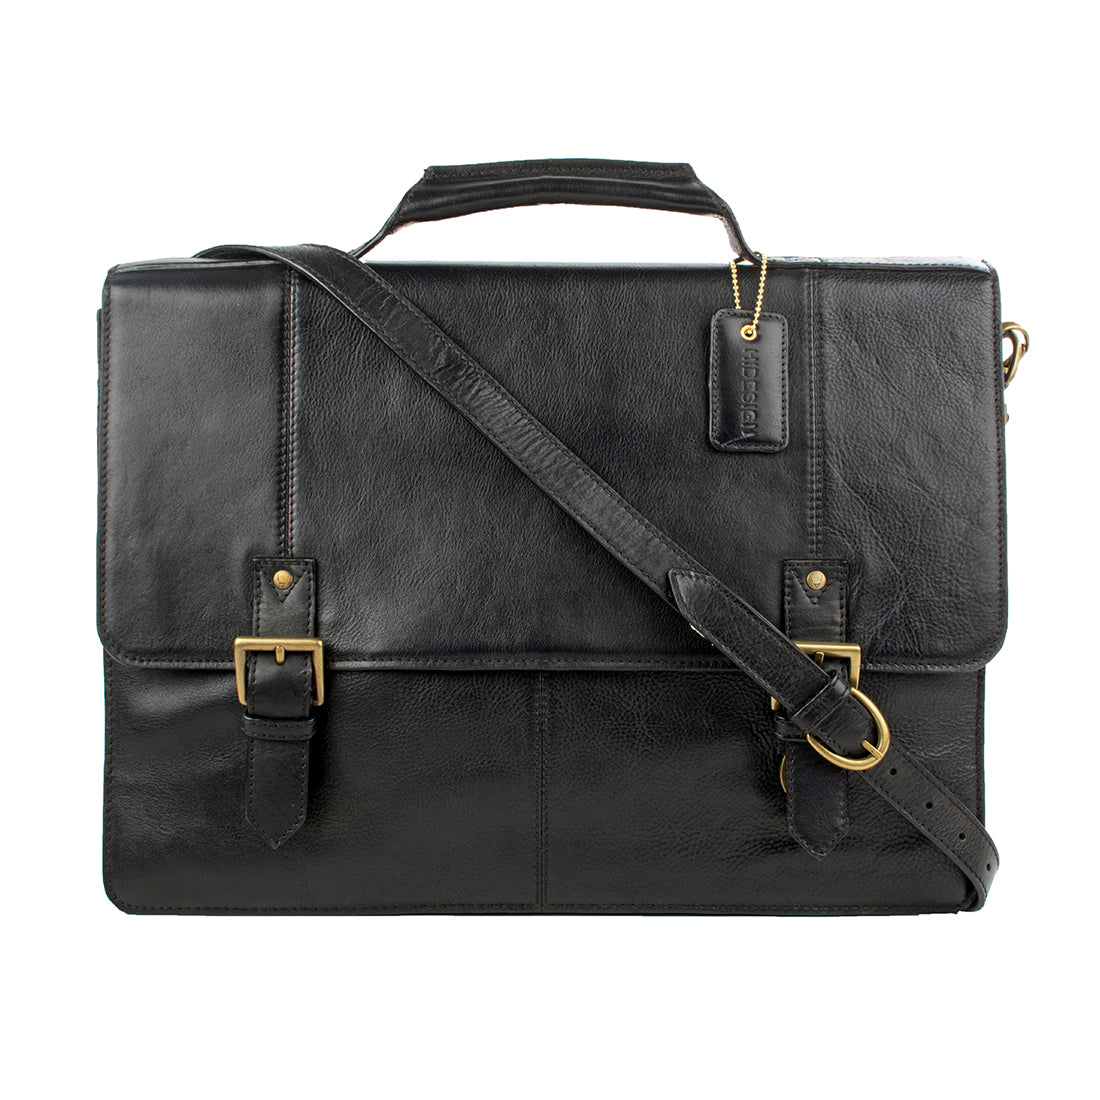 Buy Black Charles 02 Briefcase Online - Hidesign